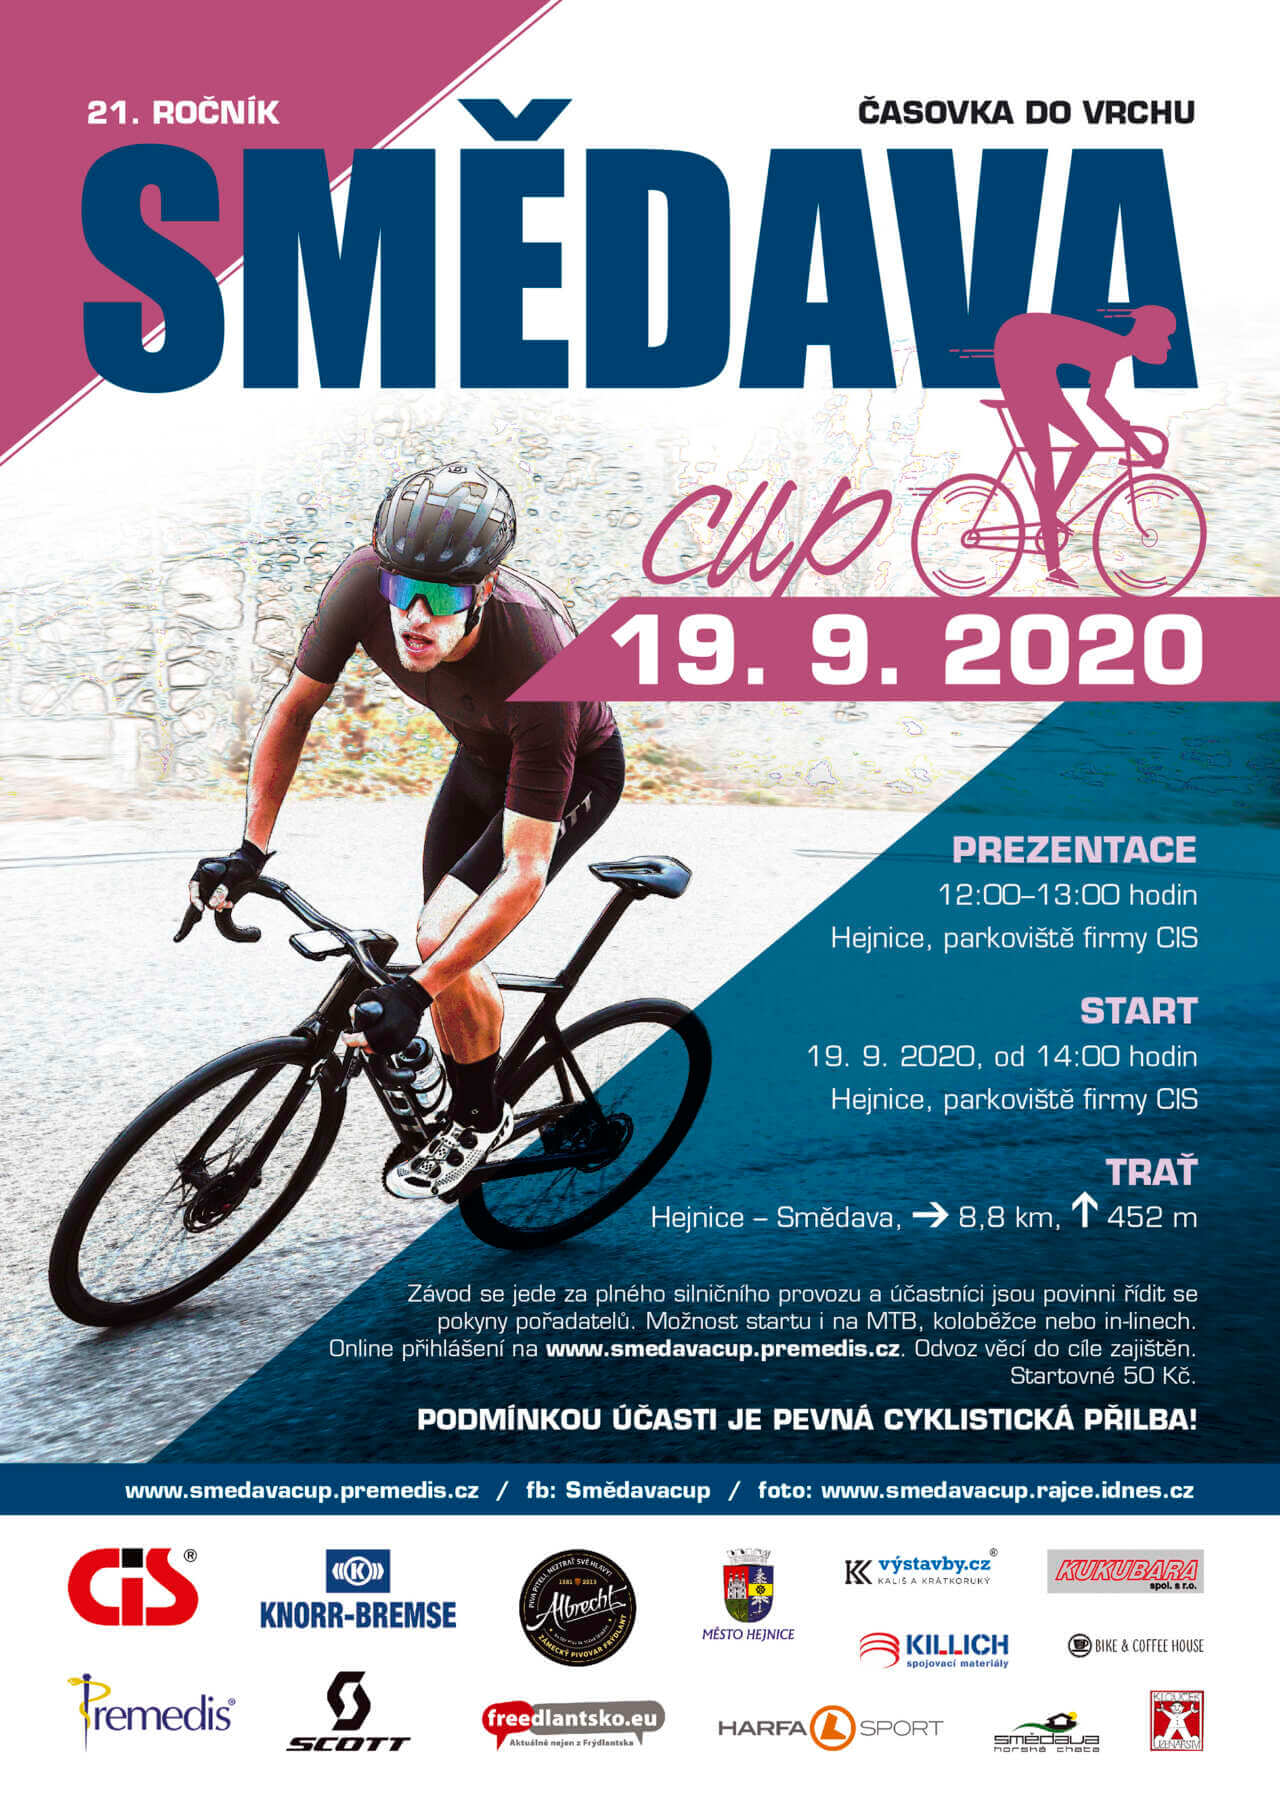 A3 SMEDAVA CUP 2020